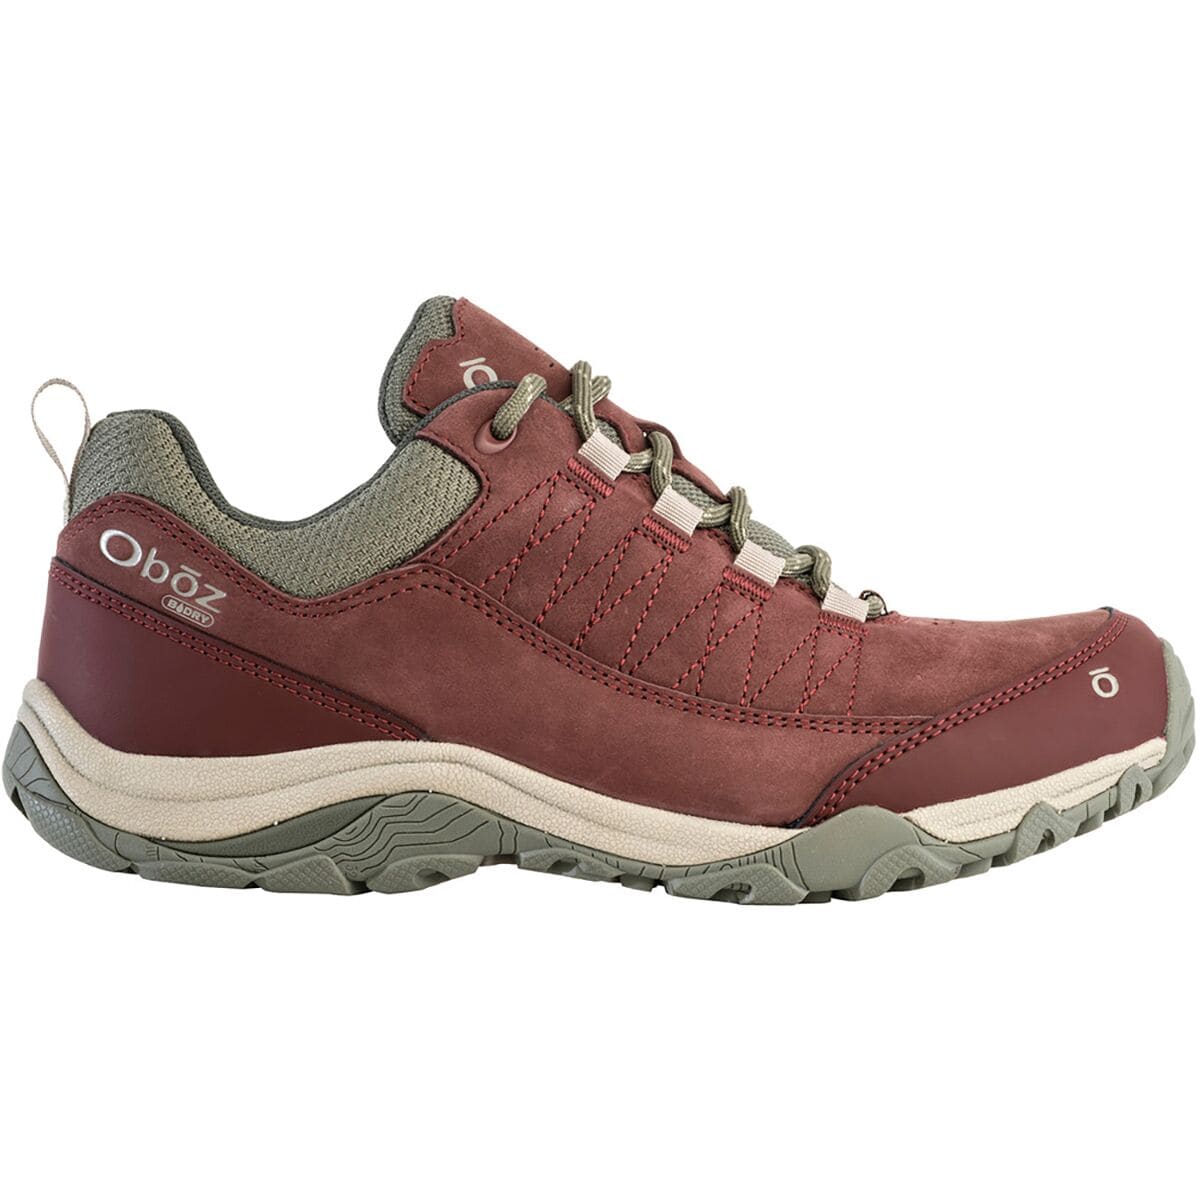 Ousel Low B-DRY Hiking Shoe - Women